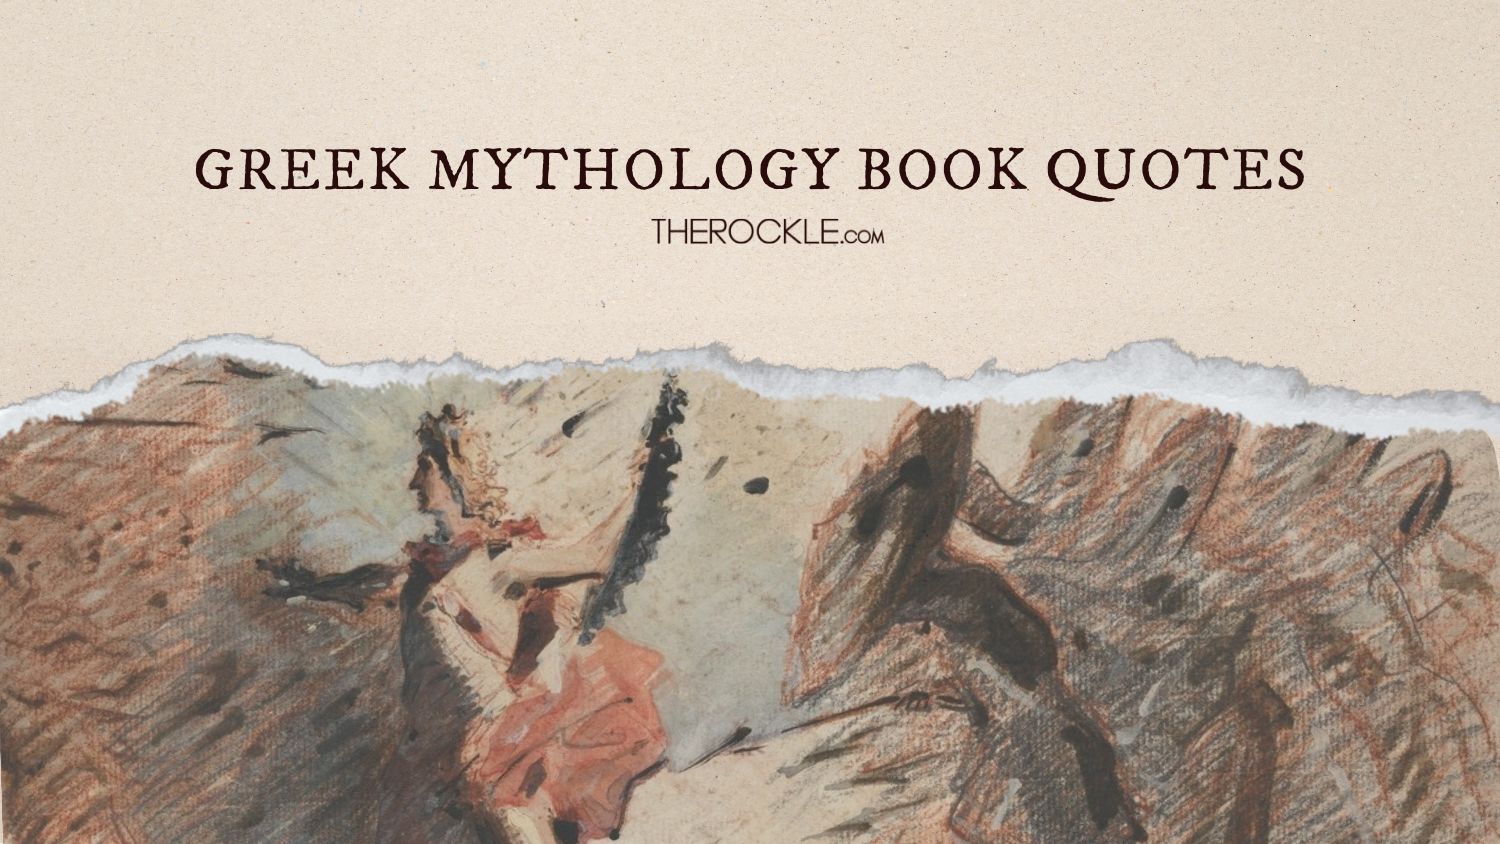 Greek mythology book quotes